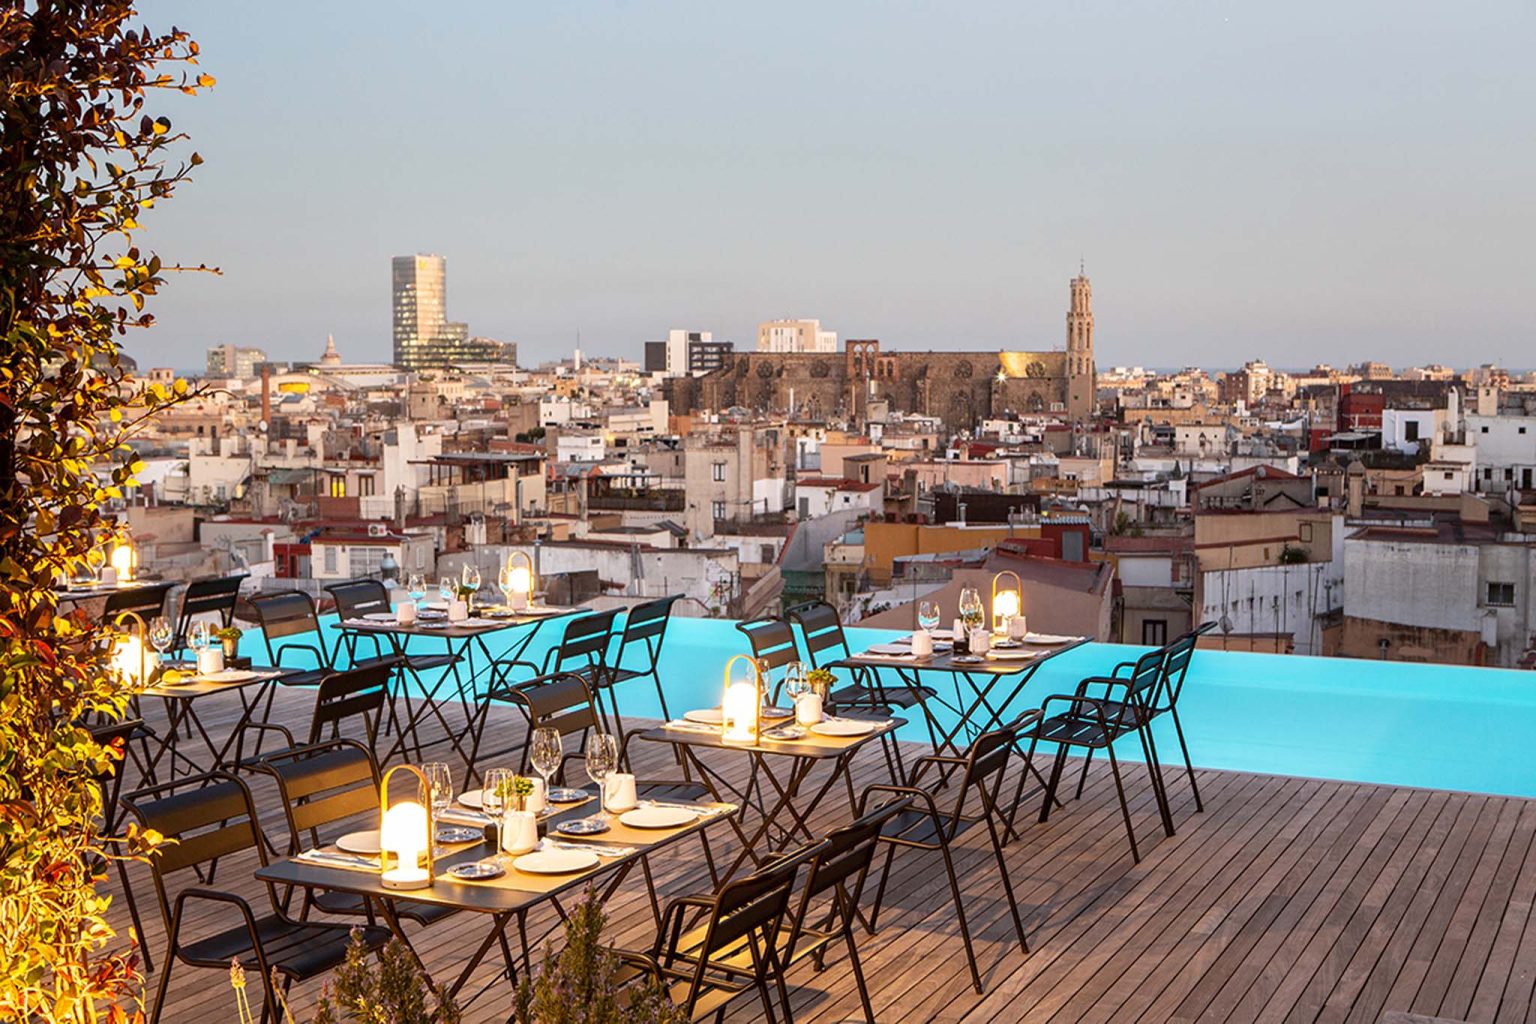 15 Best Rooftop Bars Barcelona 2022 Barcelona Rooftops